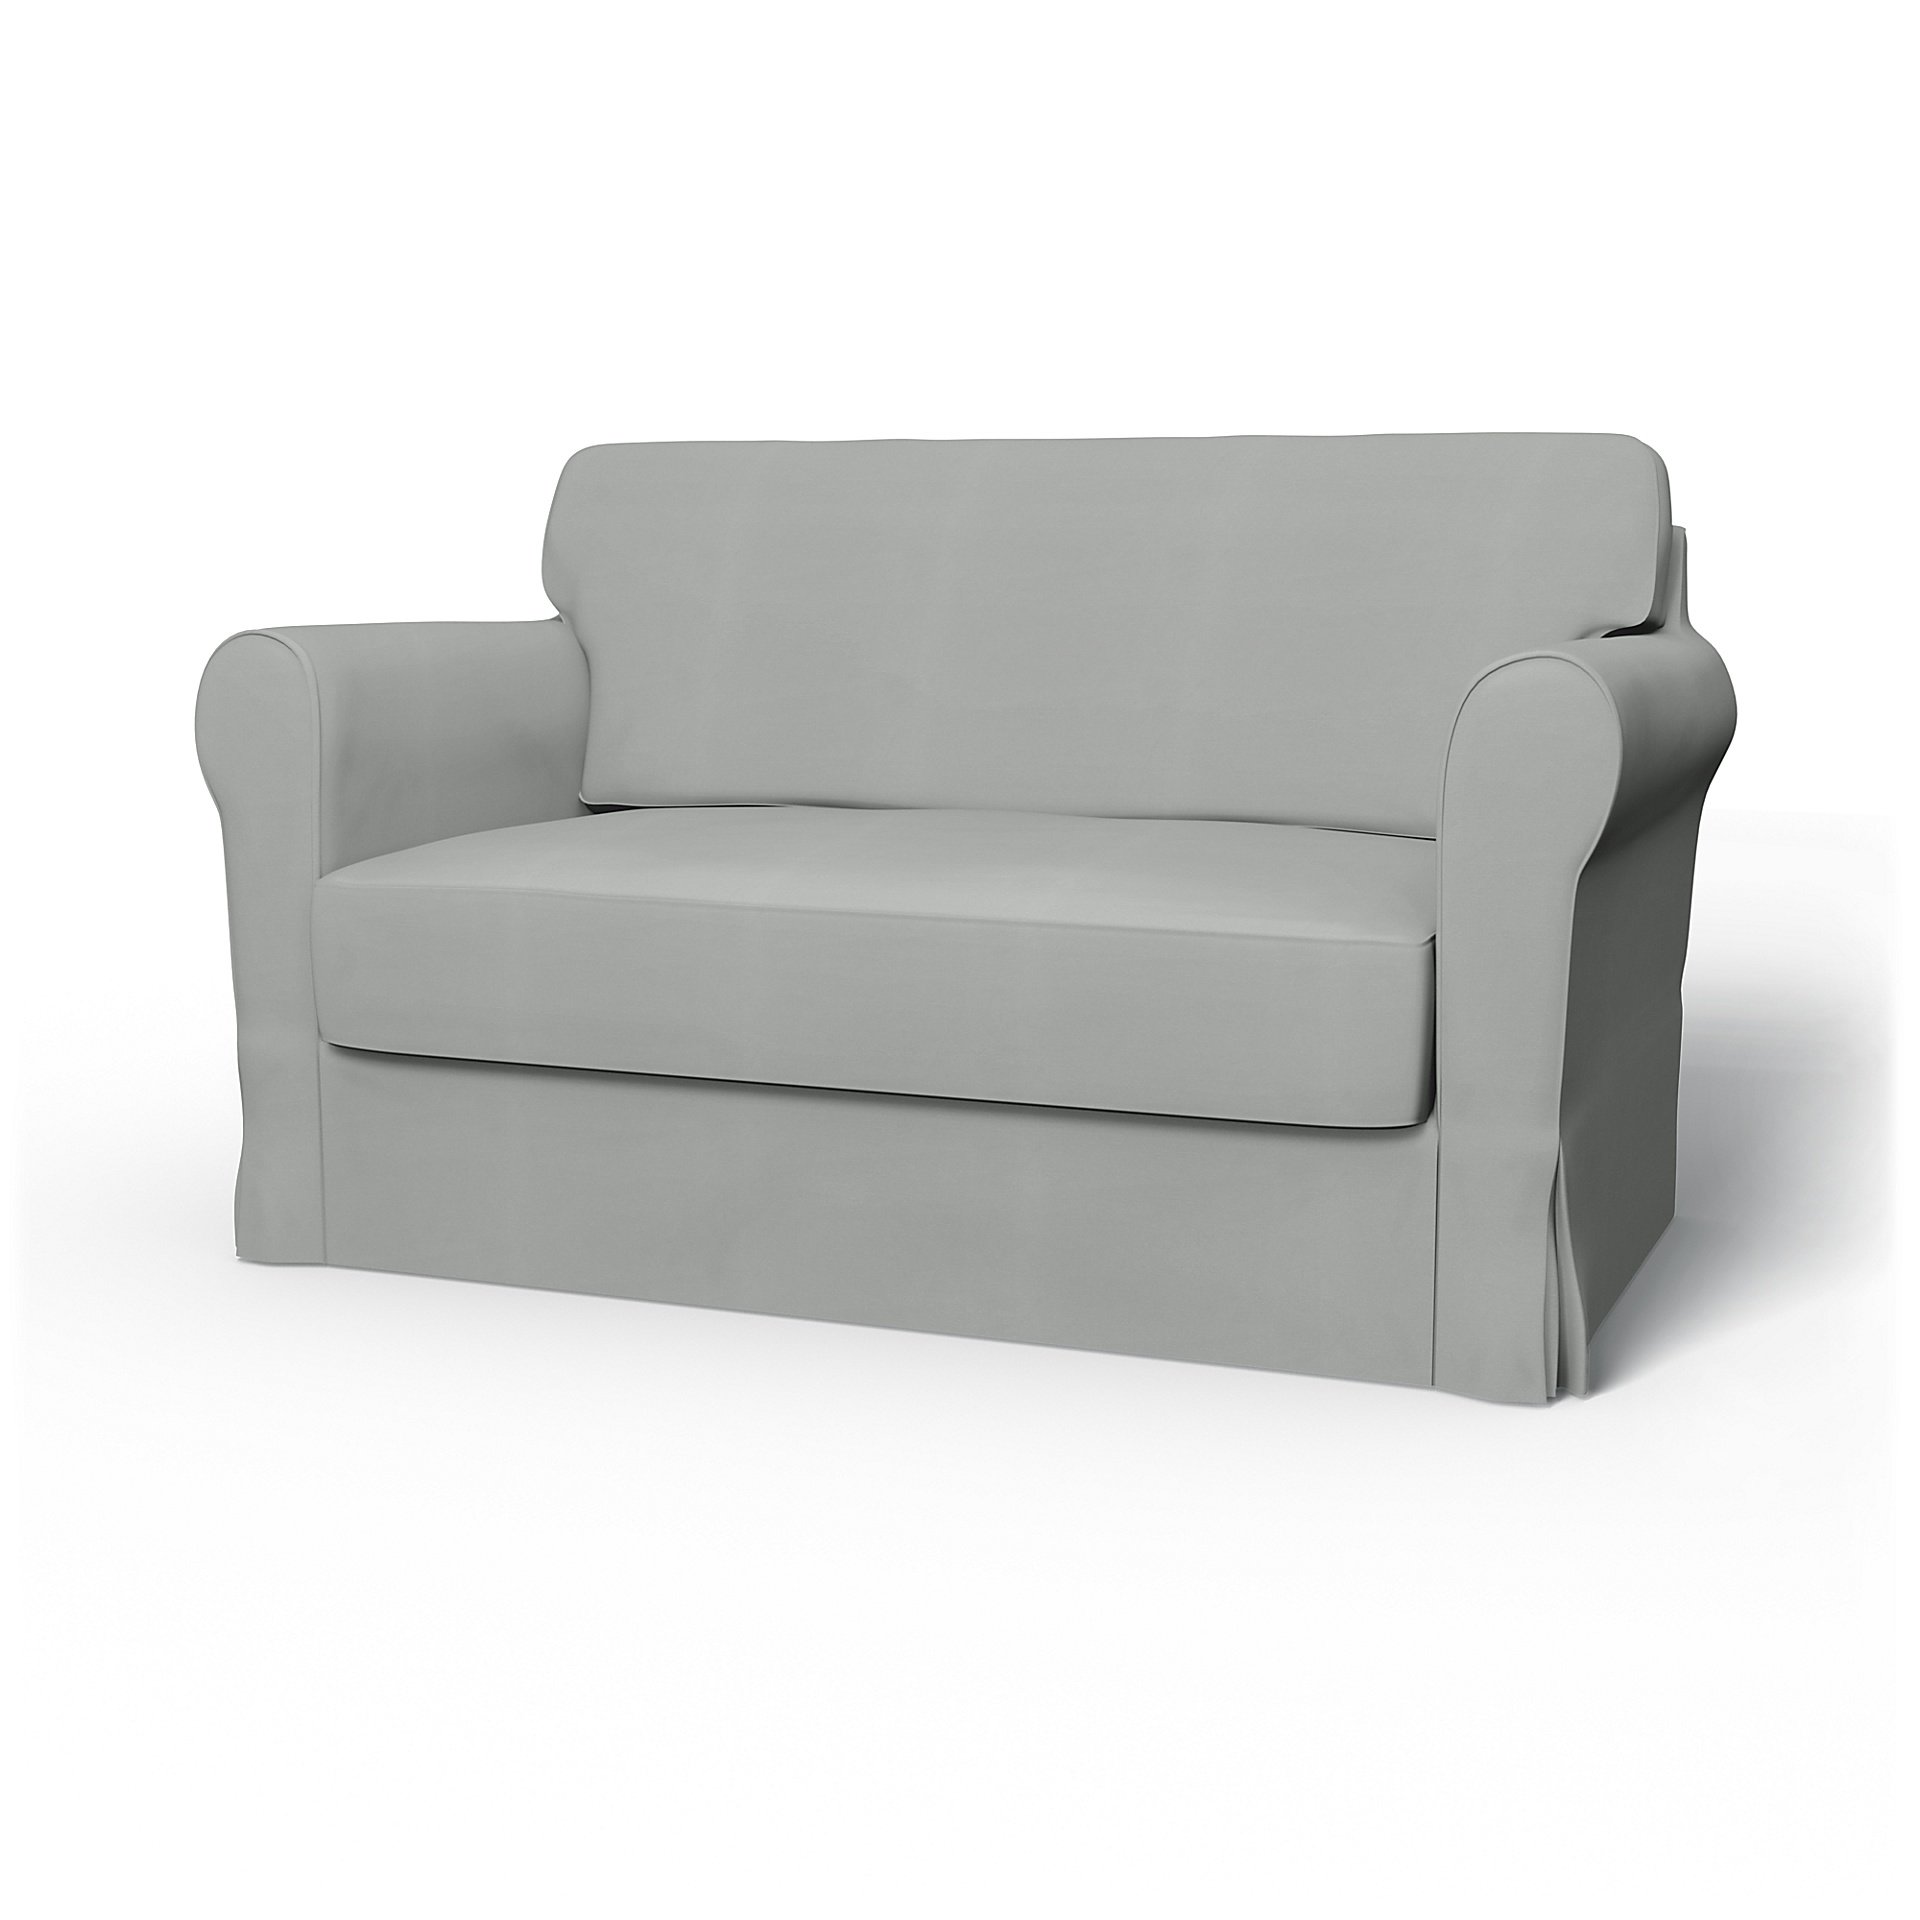 IKEA - Hagalund Sofa Bed Cover, Silver Grey, Cotton - Bemz